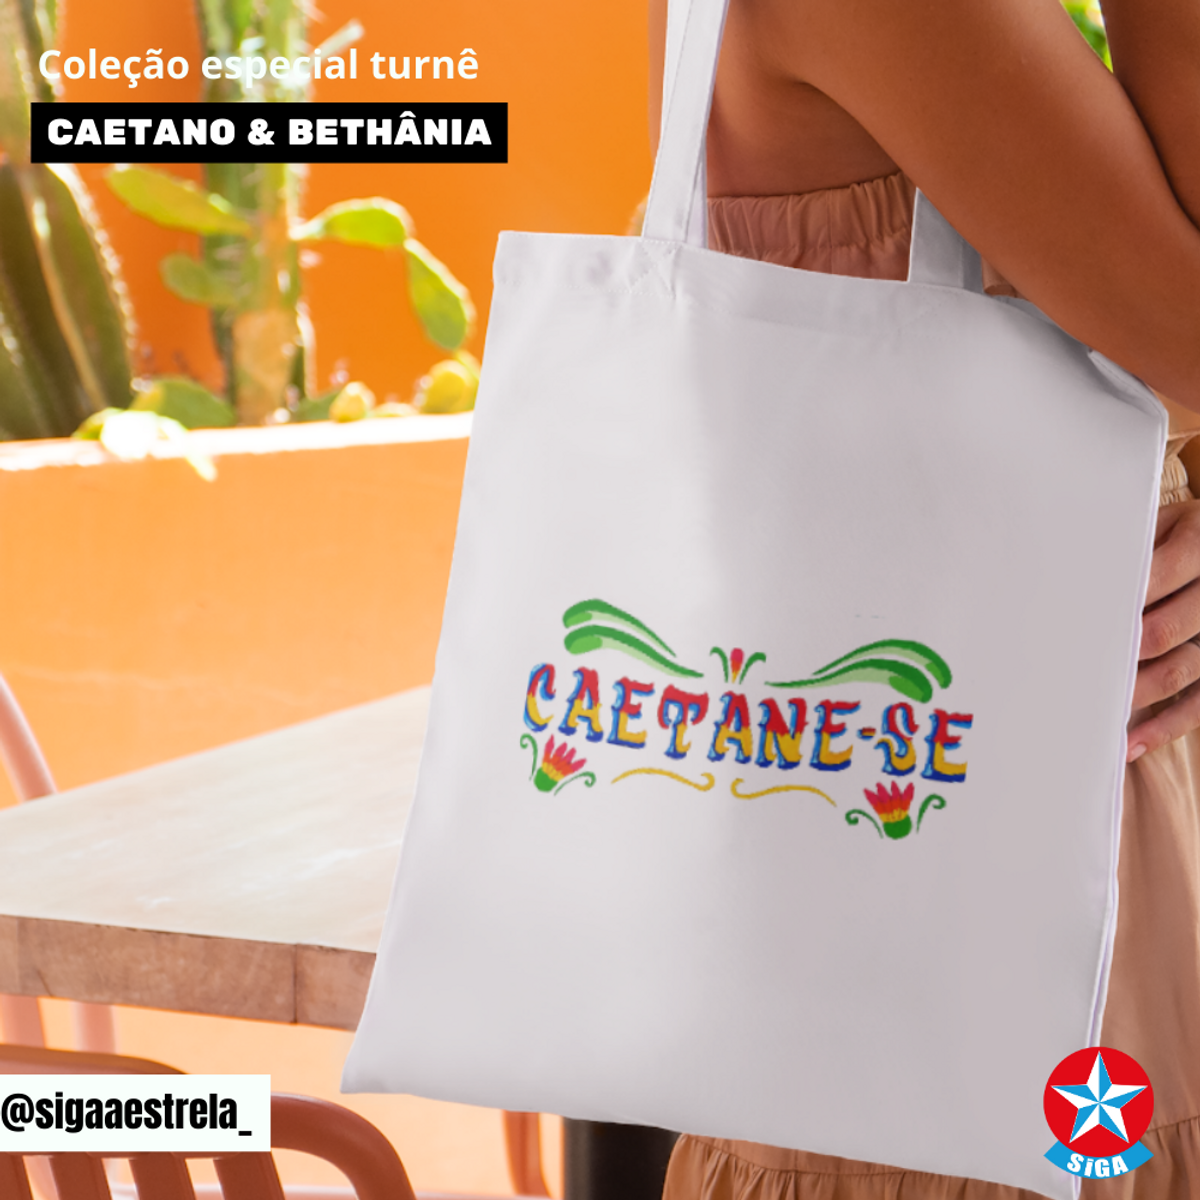 Nome do produto: Eco Bag Caetane-se | Turnê Caetano e Bethânia 